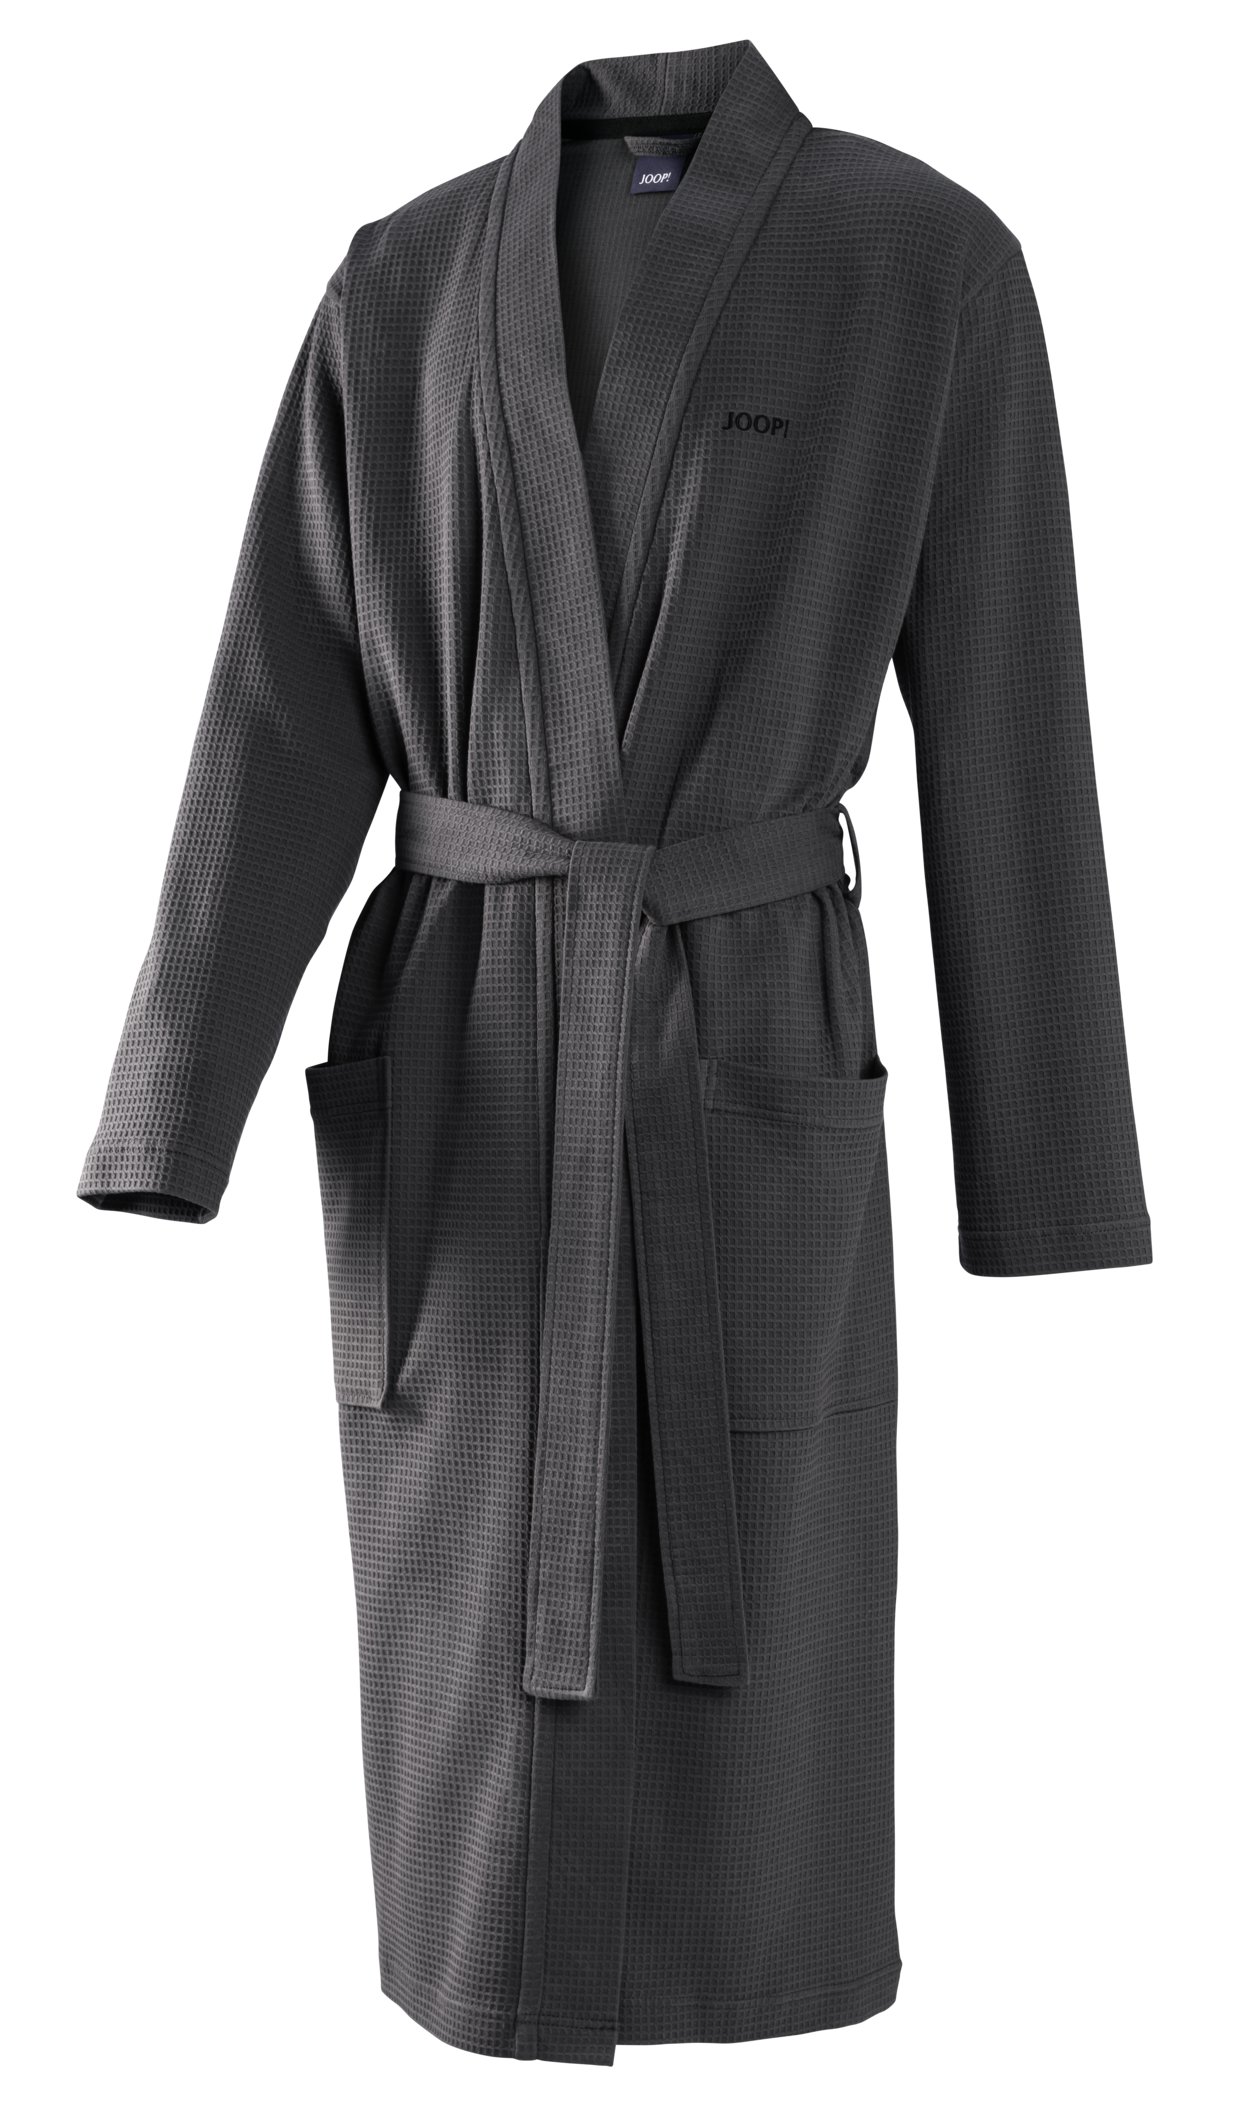 JOOP! Herren Kimono 1656-767 Anthrazit L 54/56 leichte Pique Qualität Baumwolle